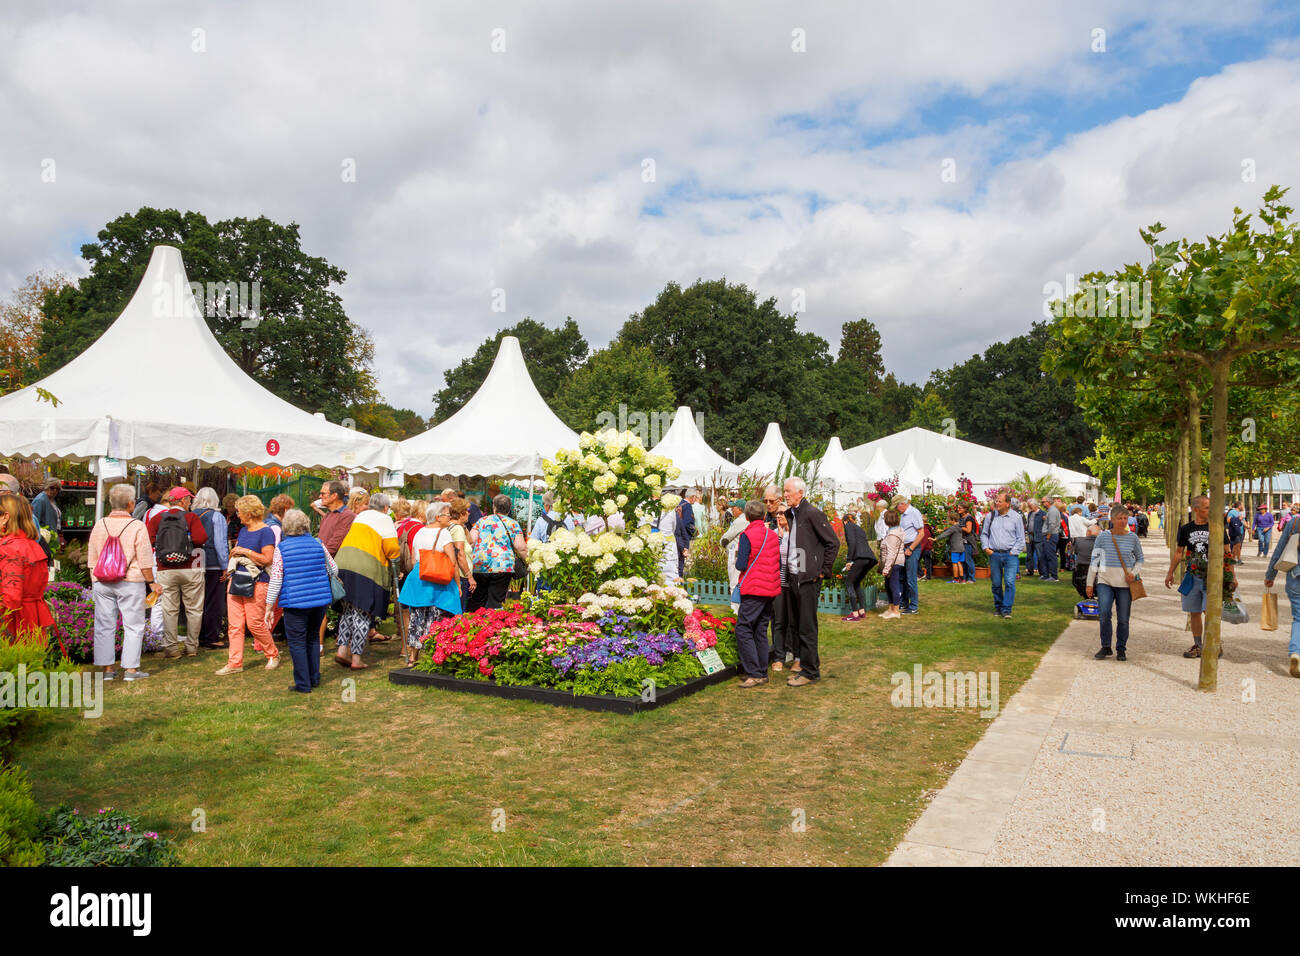 Affichage de fleurs avec hyderangea 'Limelight' au mois de septembre 2019 La fleur de Jardin Wisley RHS Garden Show à Wisley, Surrey, au sud-est de l'Angleterre Banque D'Images